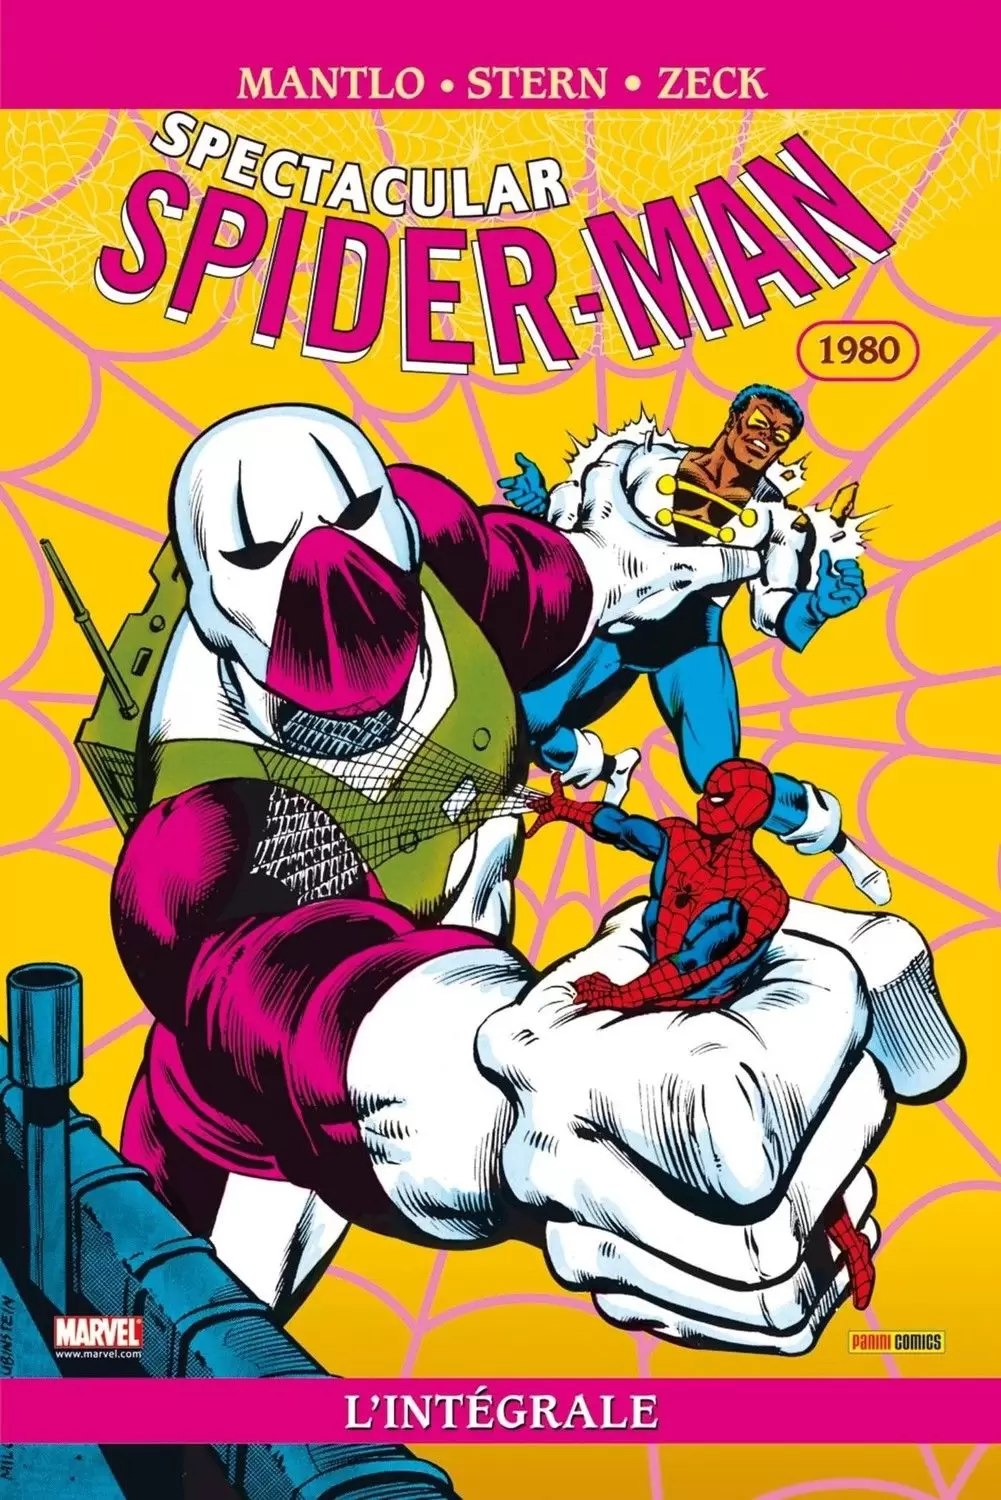 Spectacular Spider-Man - Spectacular Spider-Man 1980